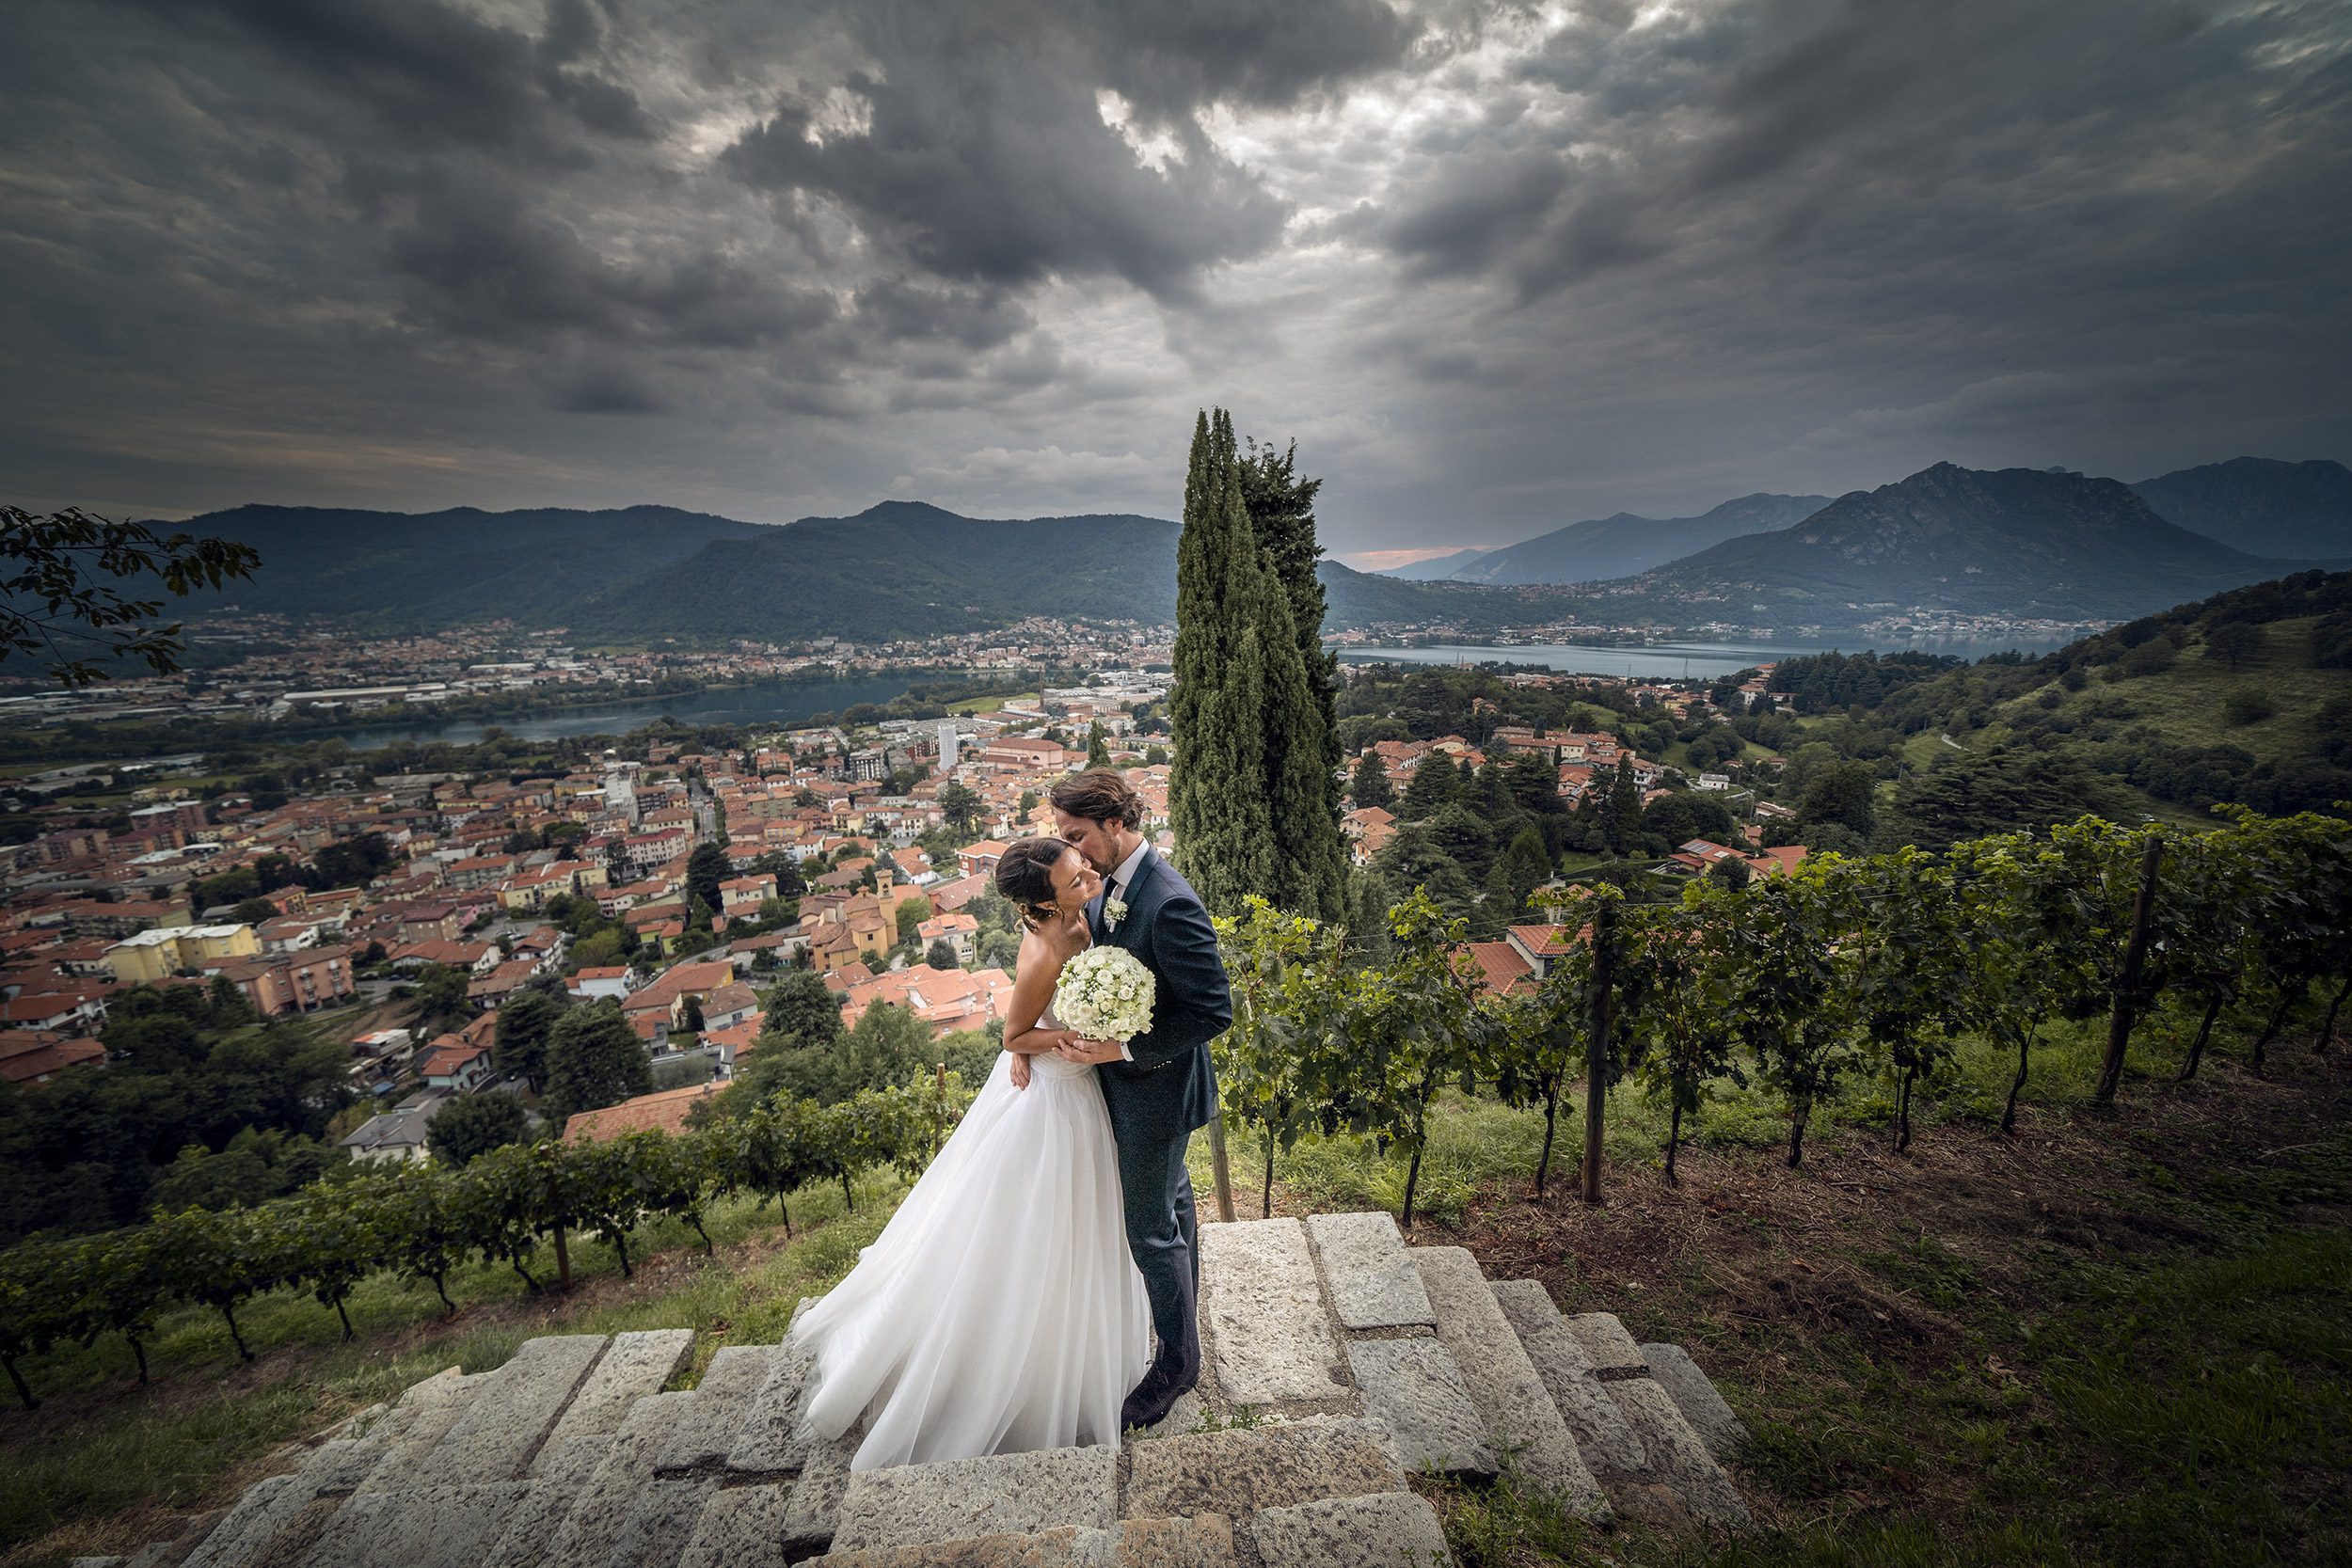 000 reportage sposi foto matrimonio wedding castello rossino lecco copia 1